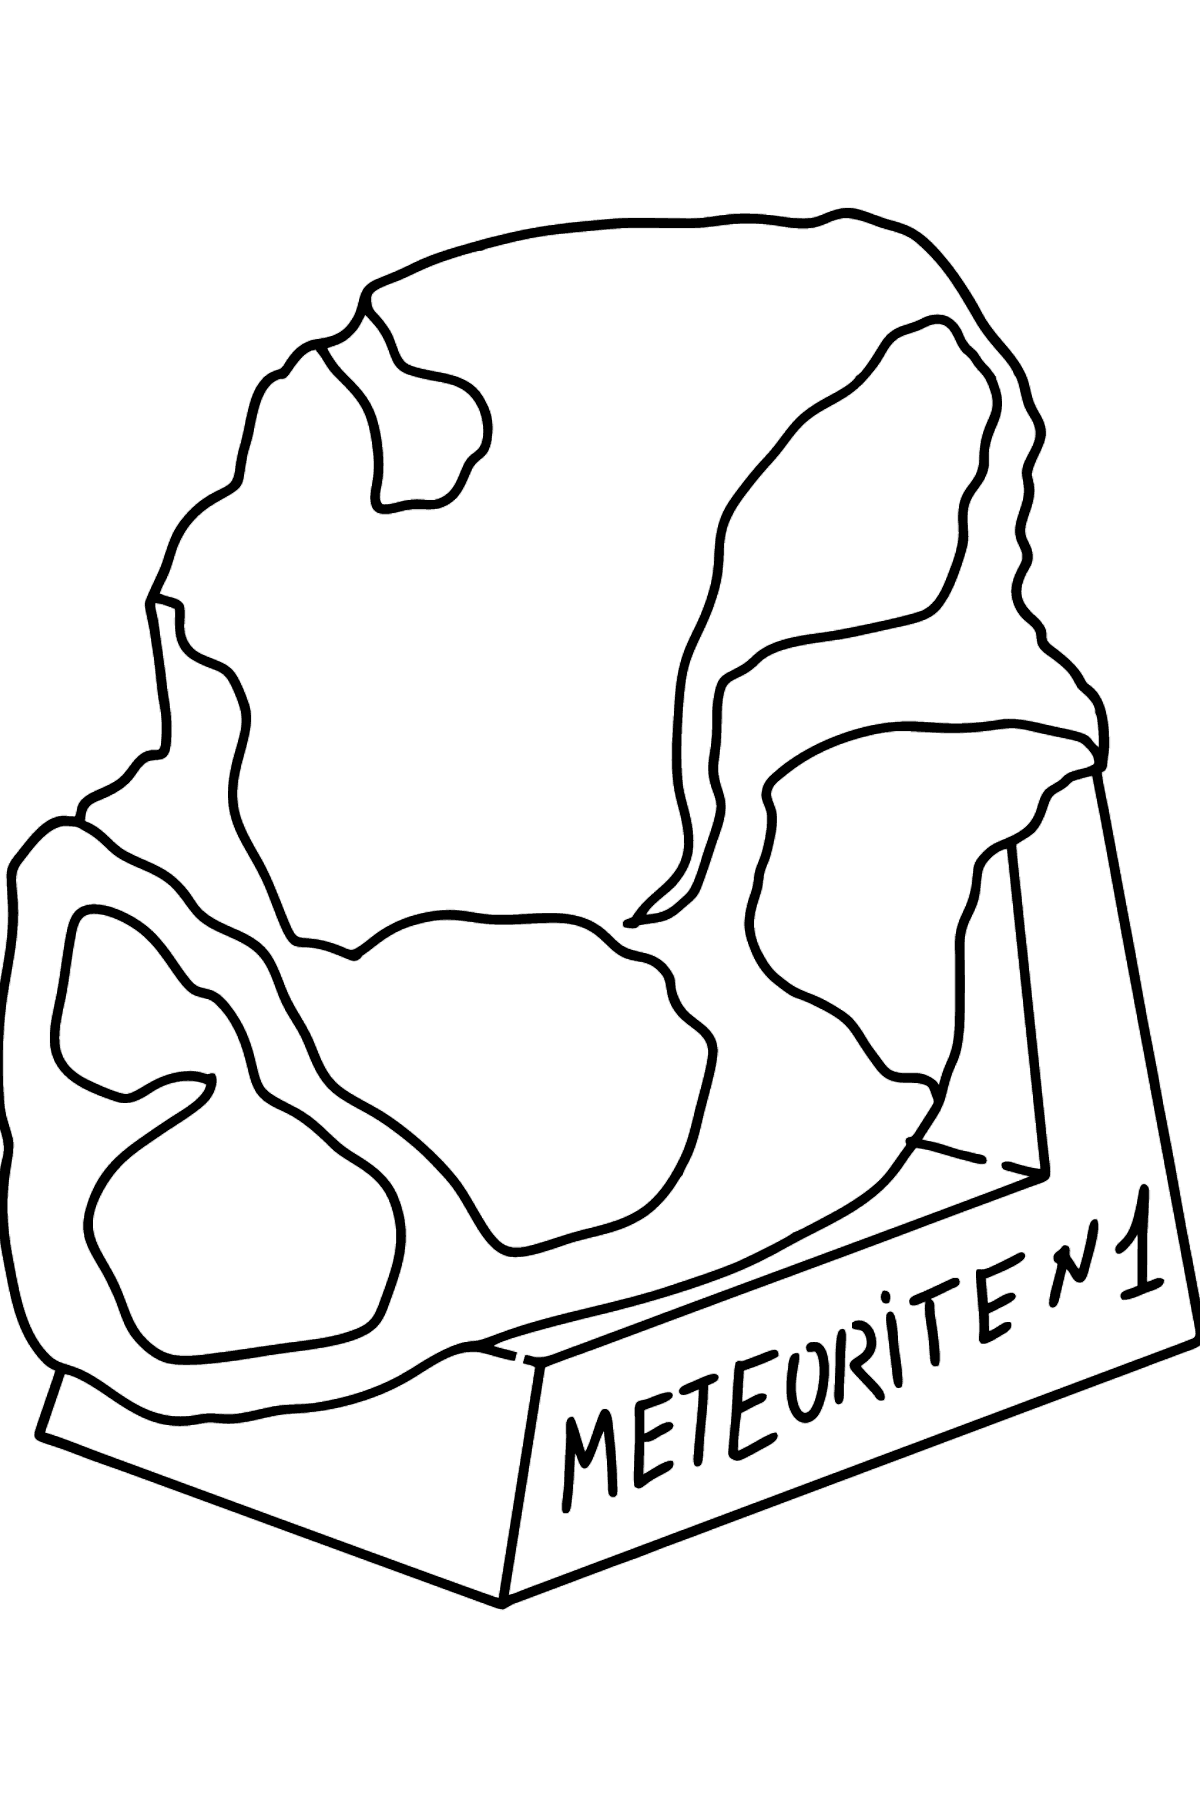 Раскраска метеорит - Картинки для Детей